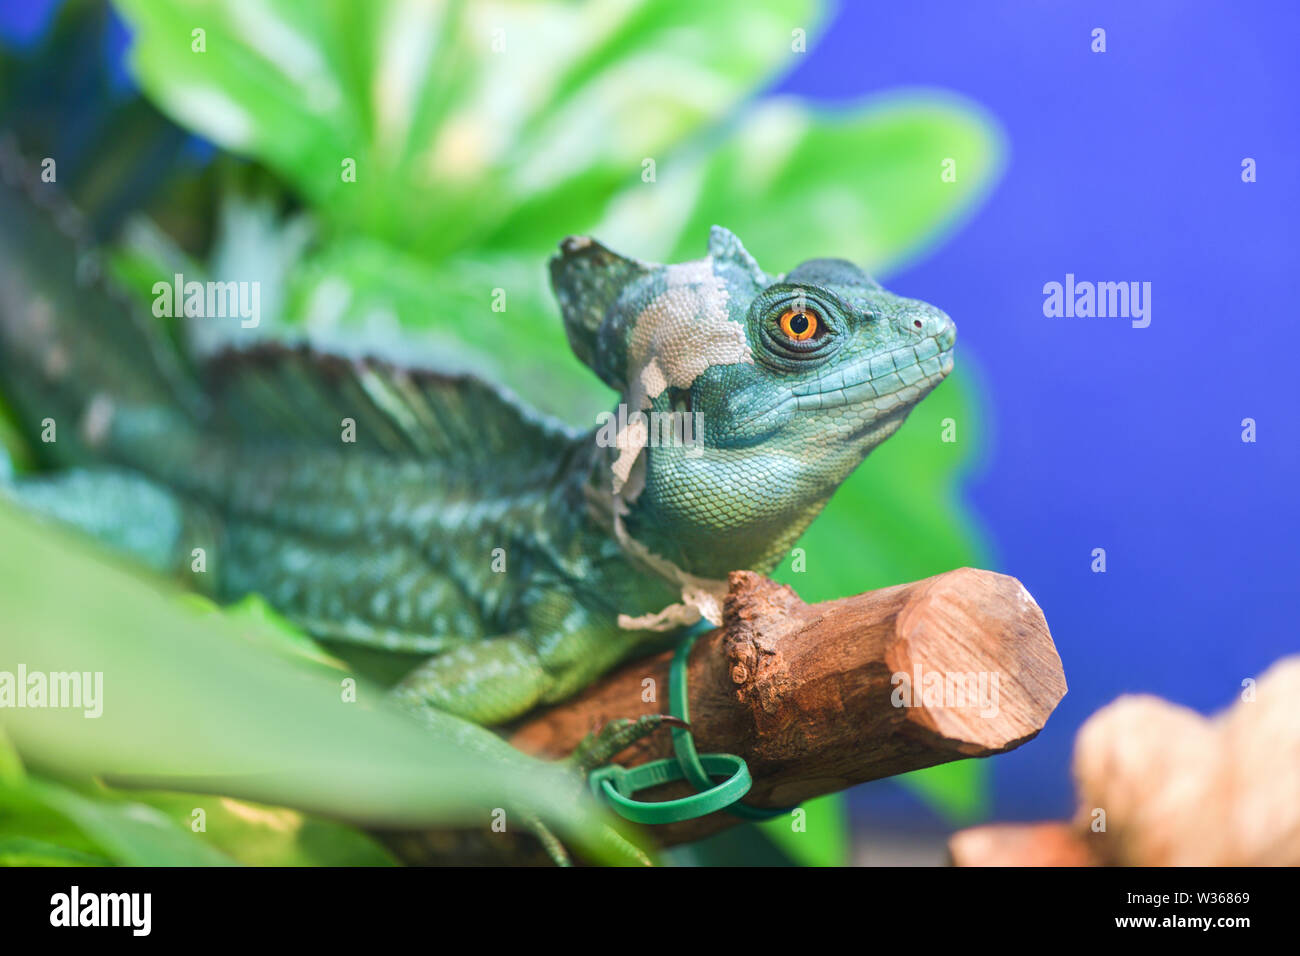 Amphibian terrarium Banque de photographies et d'images à haute résolution  - Page 2 - Alamy